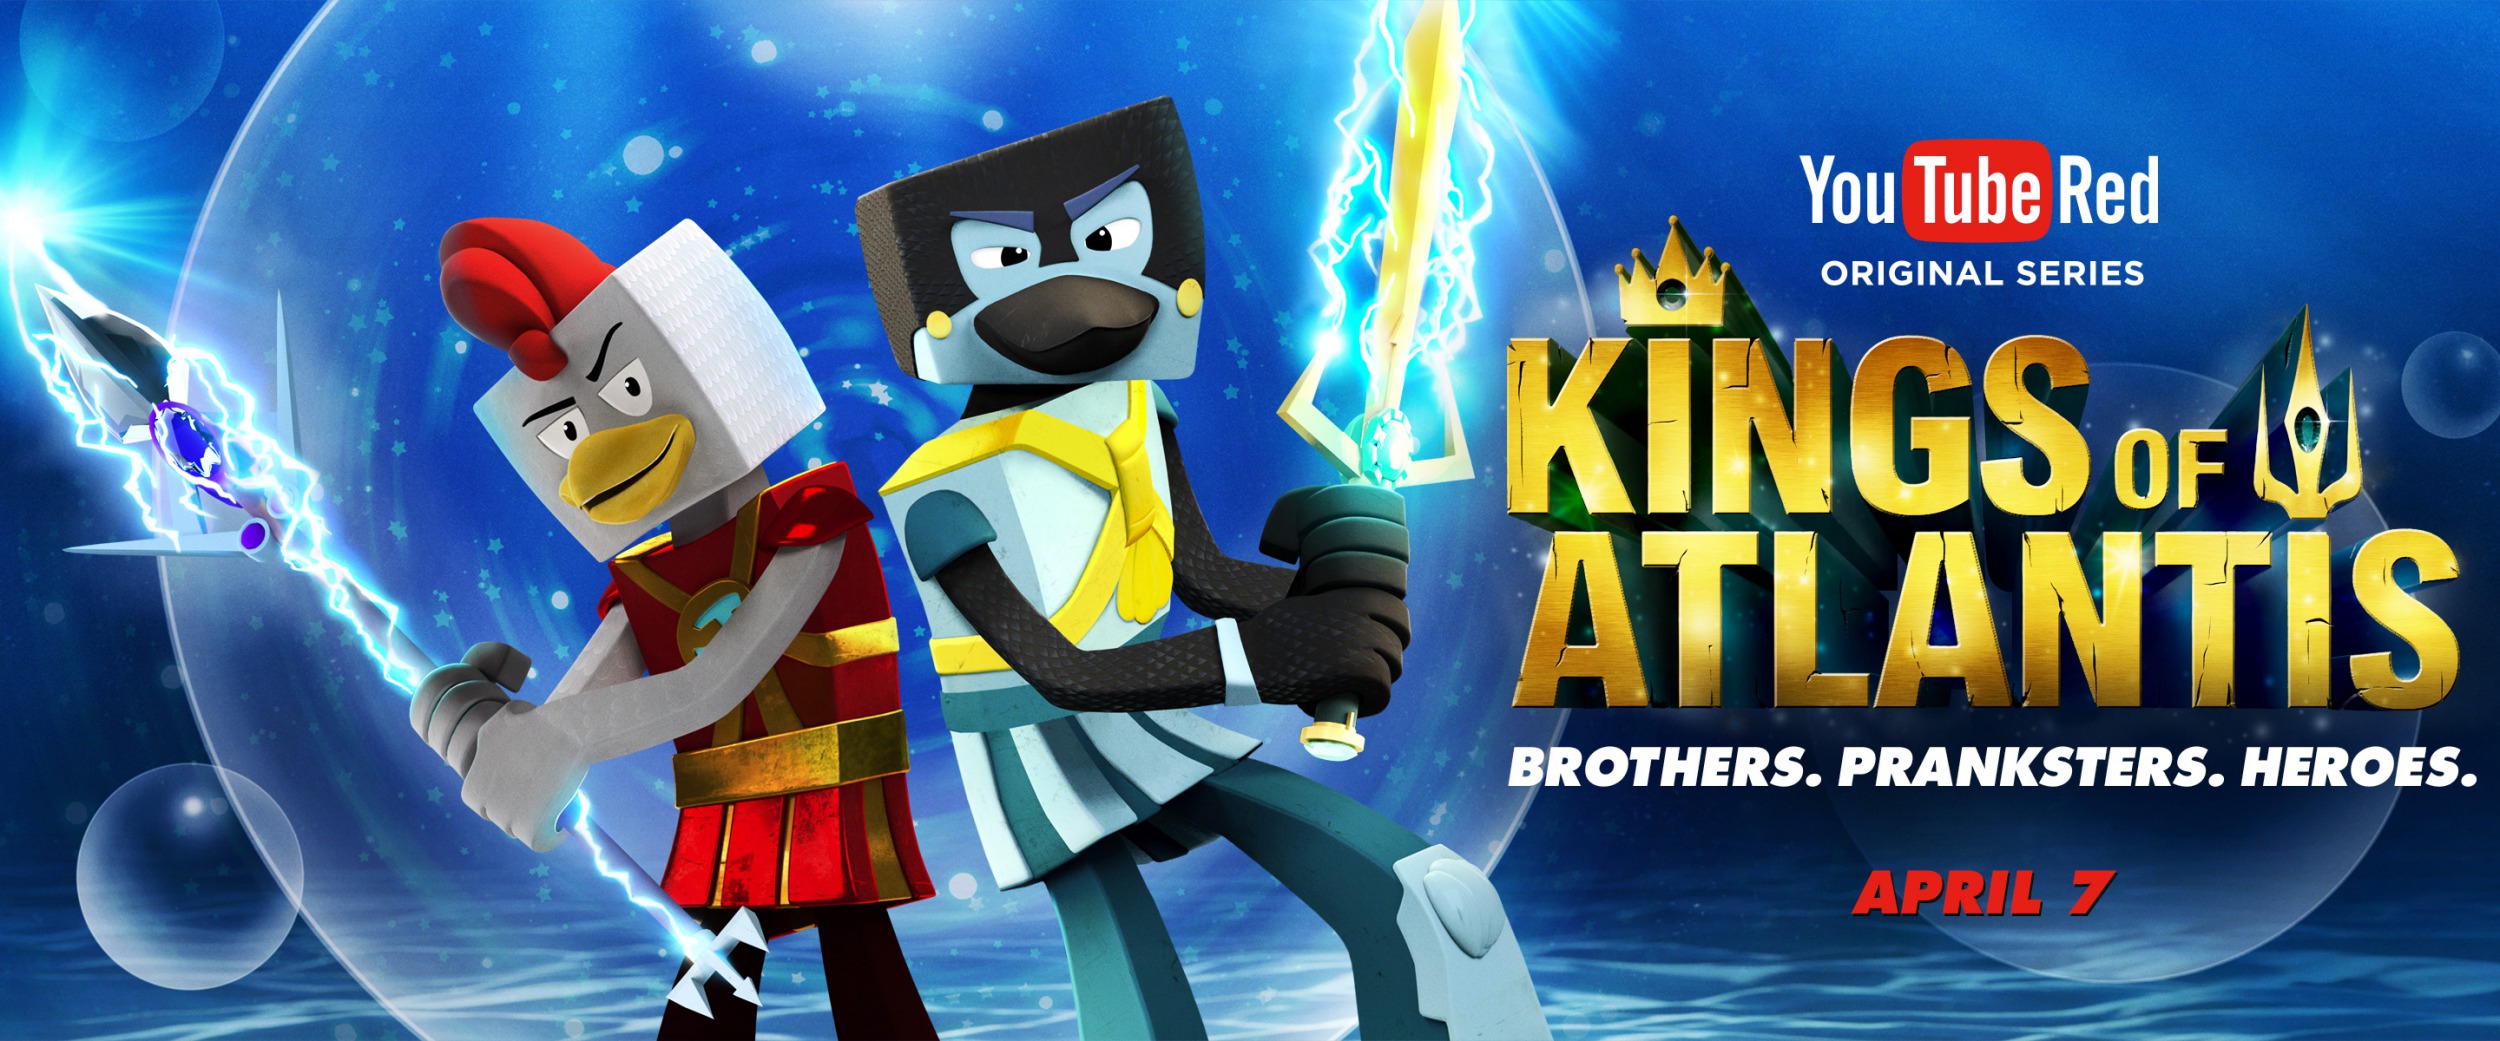 Mega Sized TV Poster Image for Kings of Atlantis (#1 of 2)